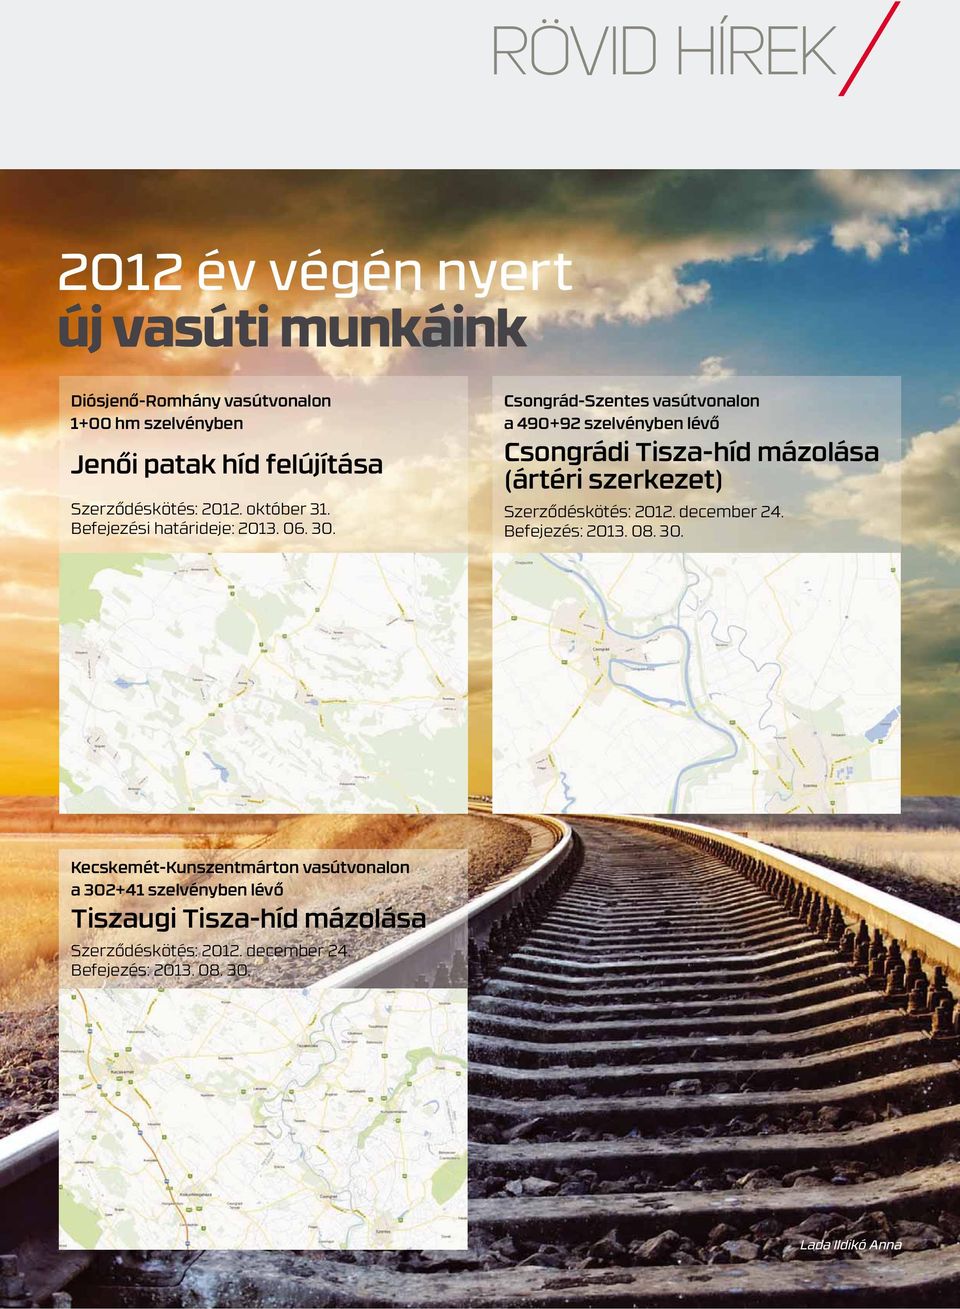 Csongrád-Szentes vasútvonalon a 490+92 szelvényben lévő Csongrádi Tisza-híd mázolása (ártéri szerkezet) Szerződéskötés: 2012.